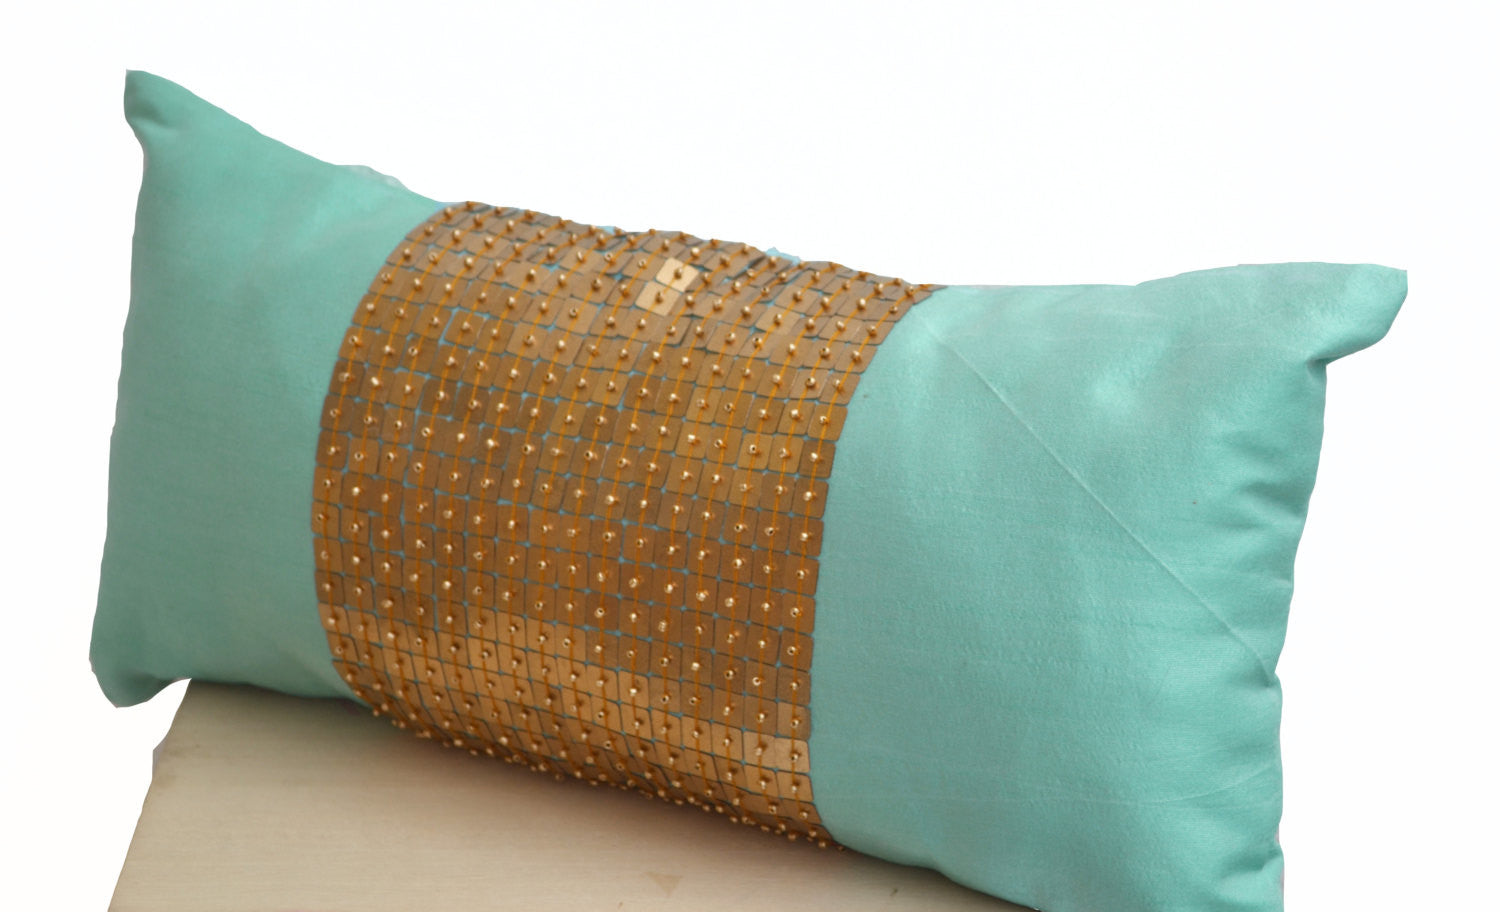 Handmade teal lumbar pillows with color block